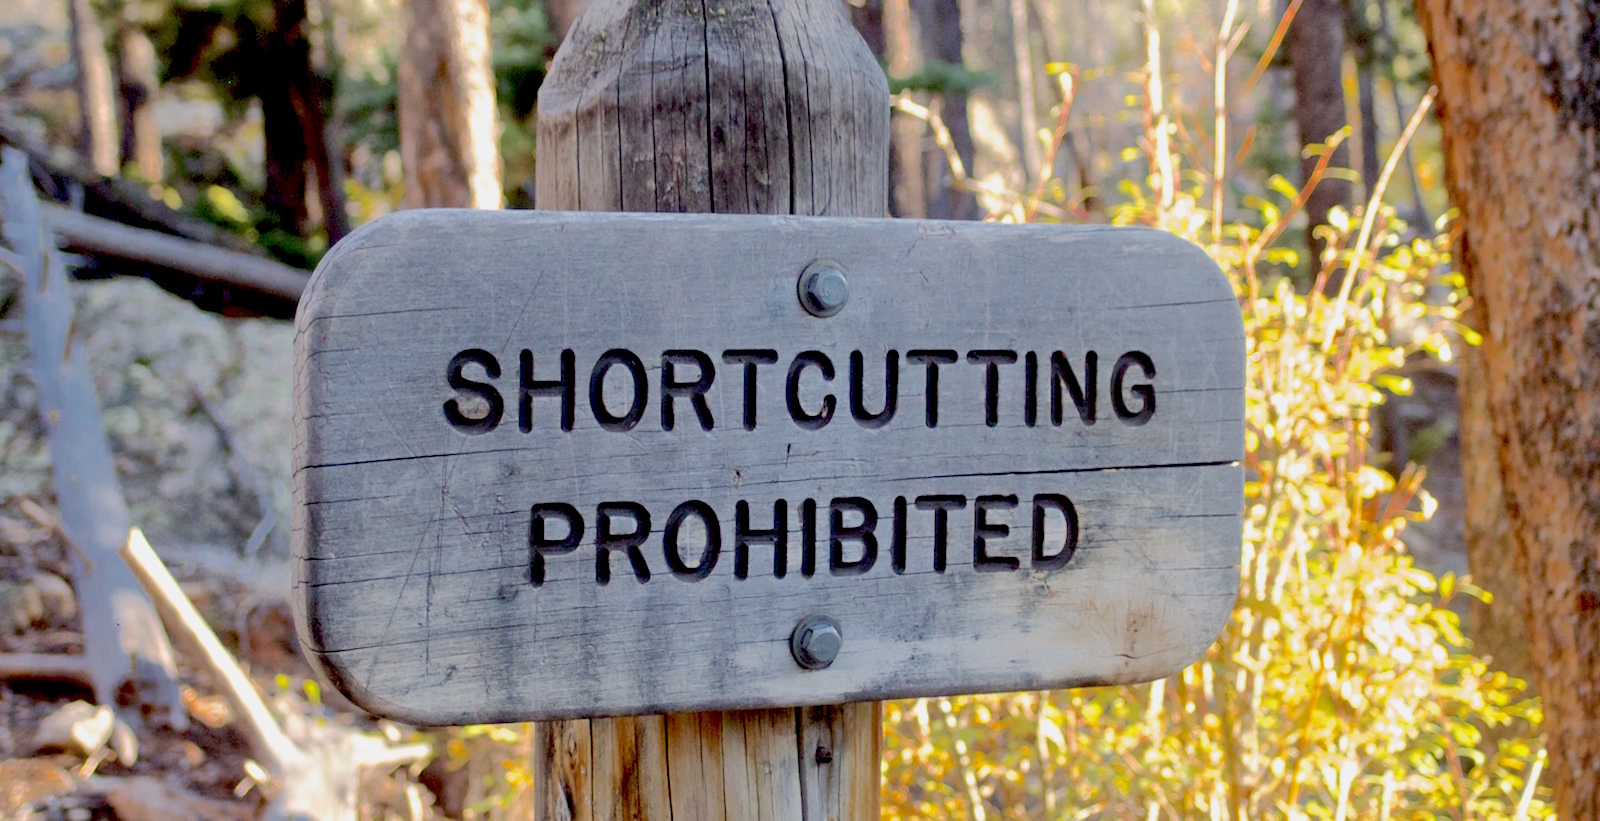 Shortcutting prohibited